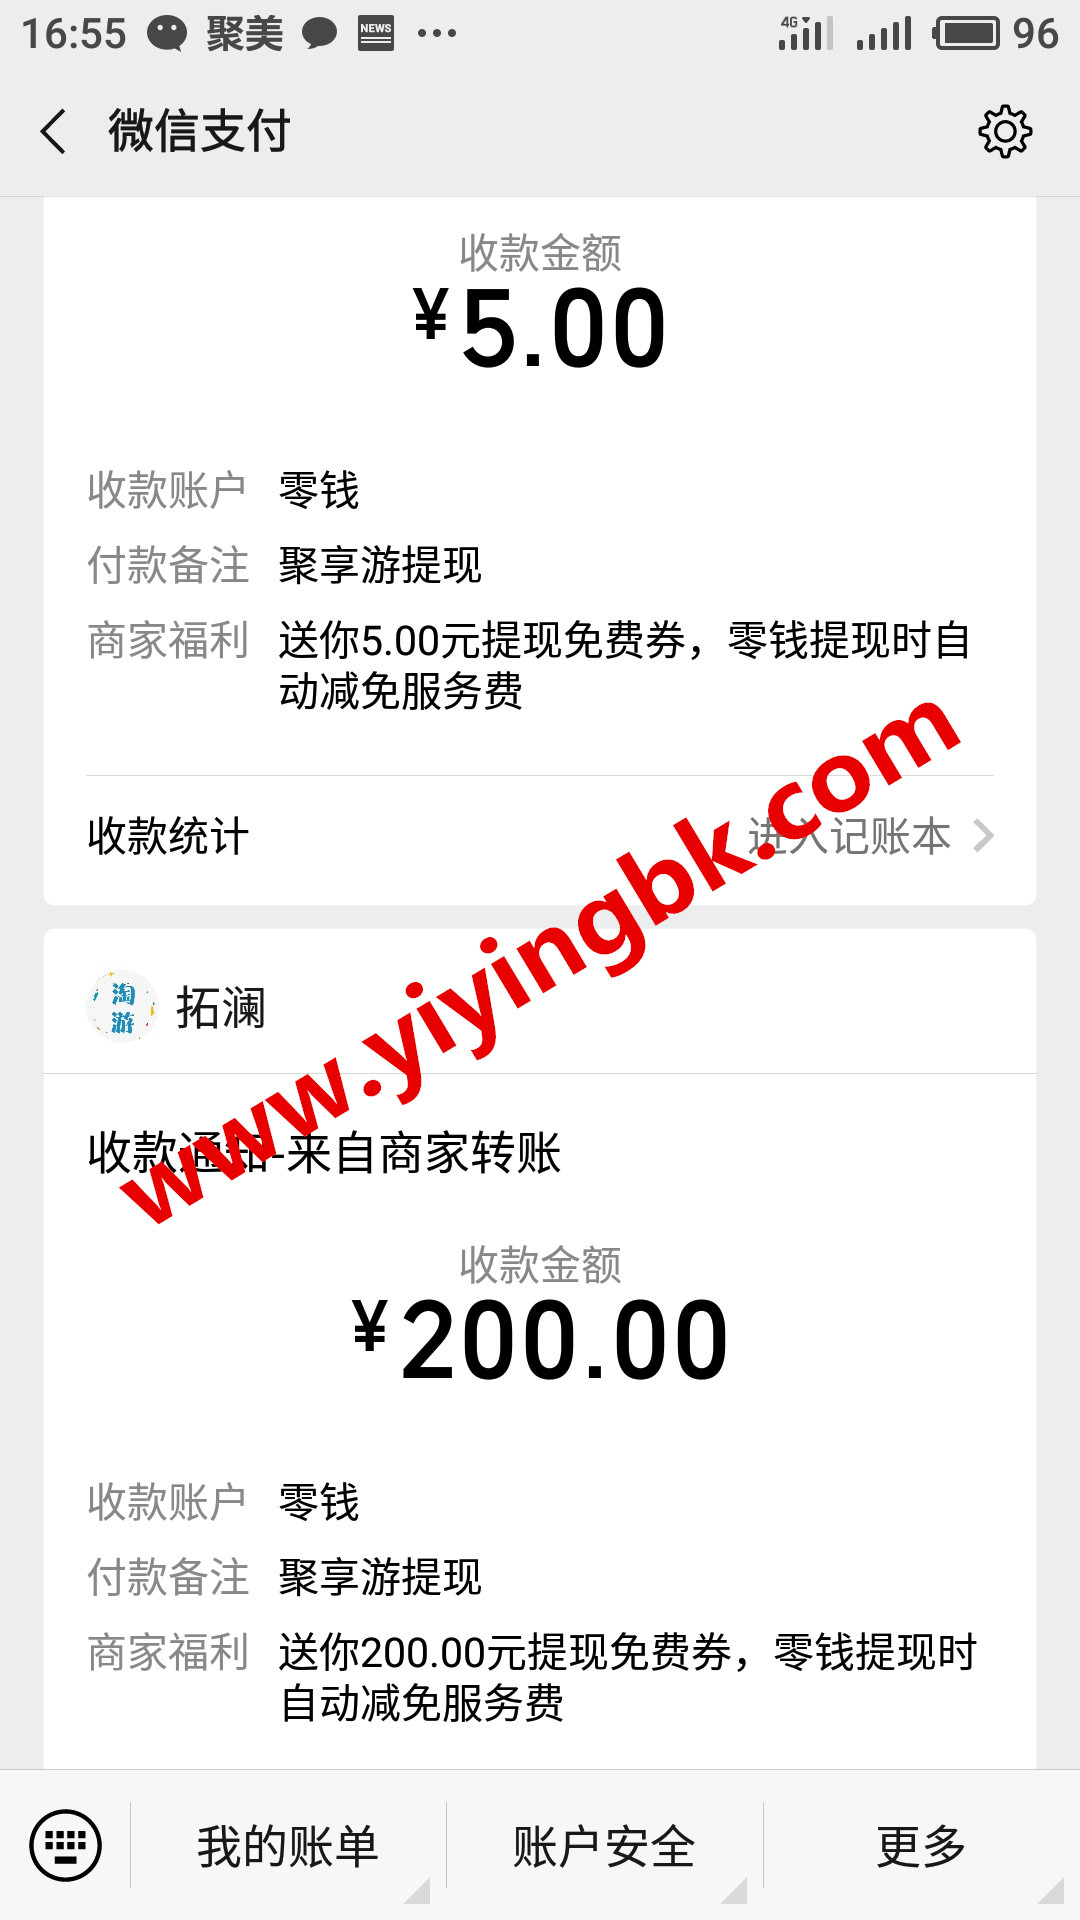 玩有红包的手游赚零花钱，微信提现205元红包快速到账。www.yiyingbk.com